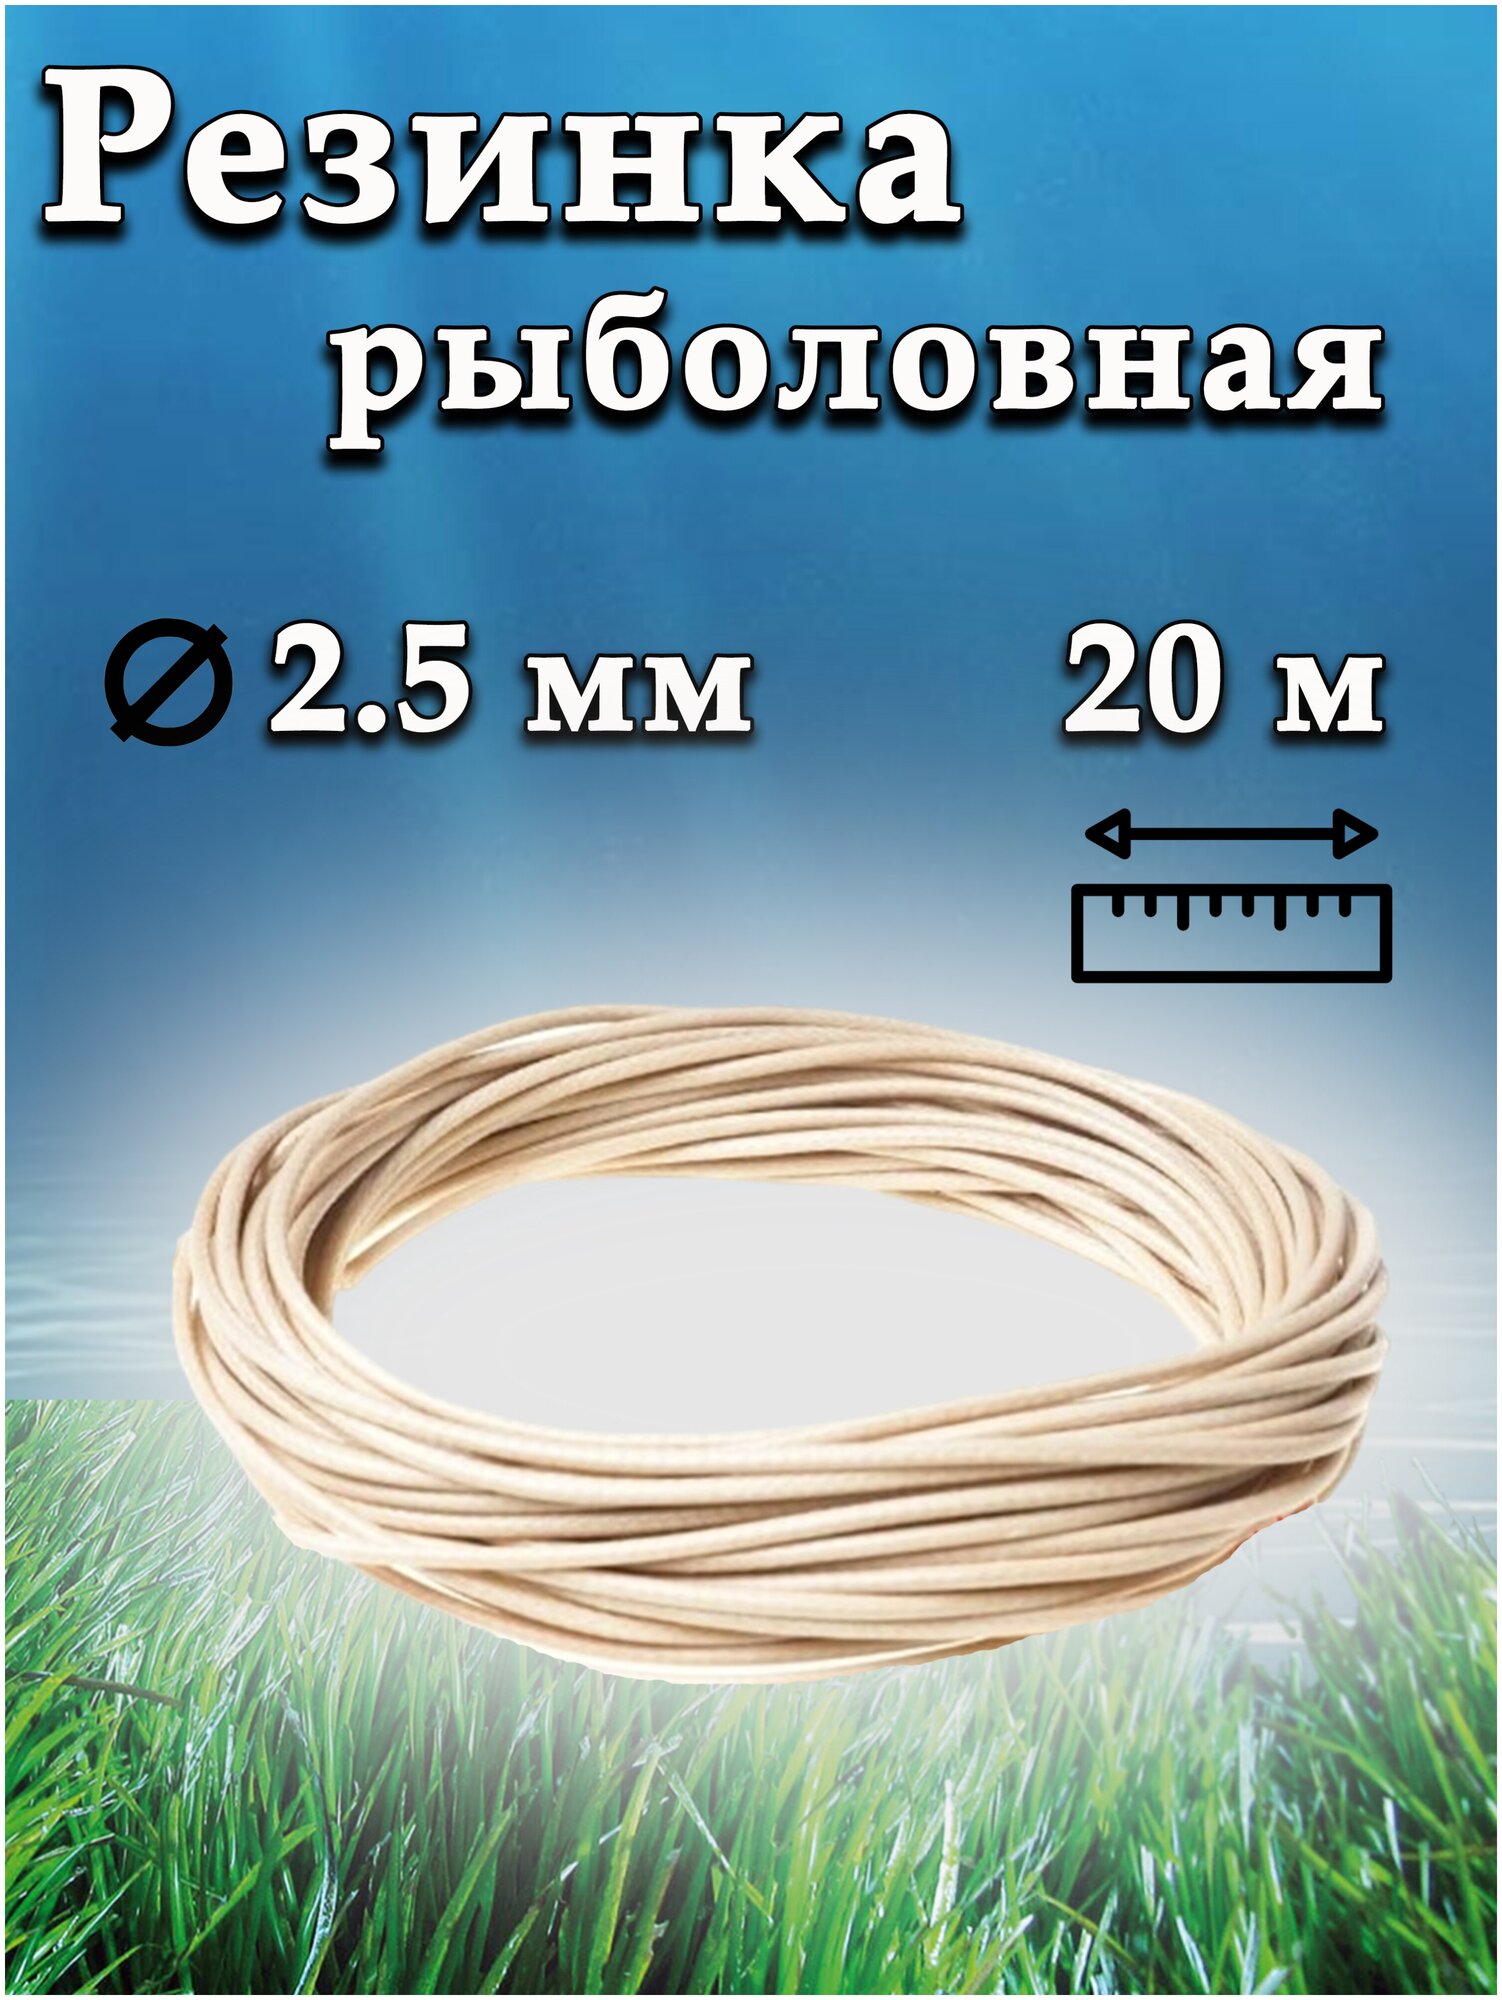 Резинка рыболовная / резинка для донки / 20 метров / D-2.5 мм